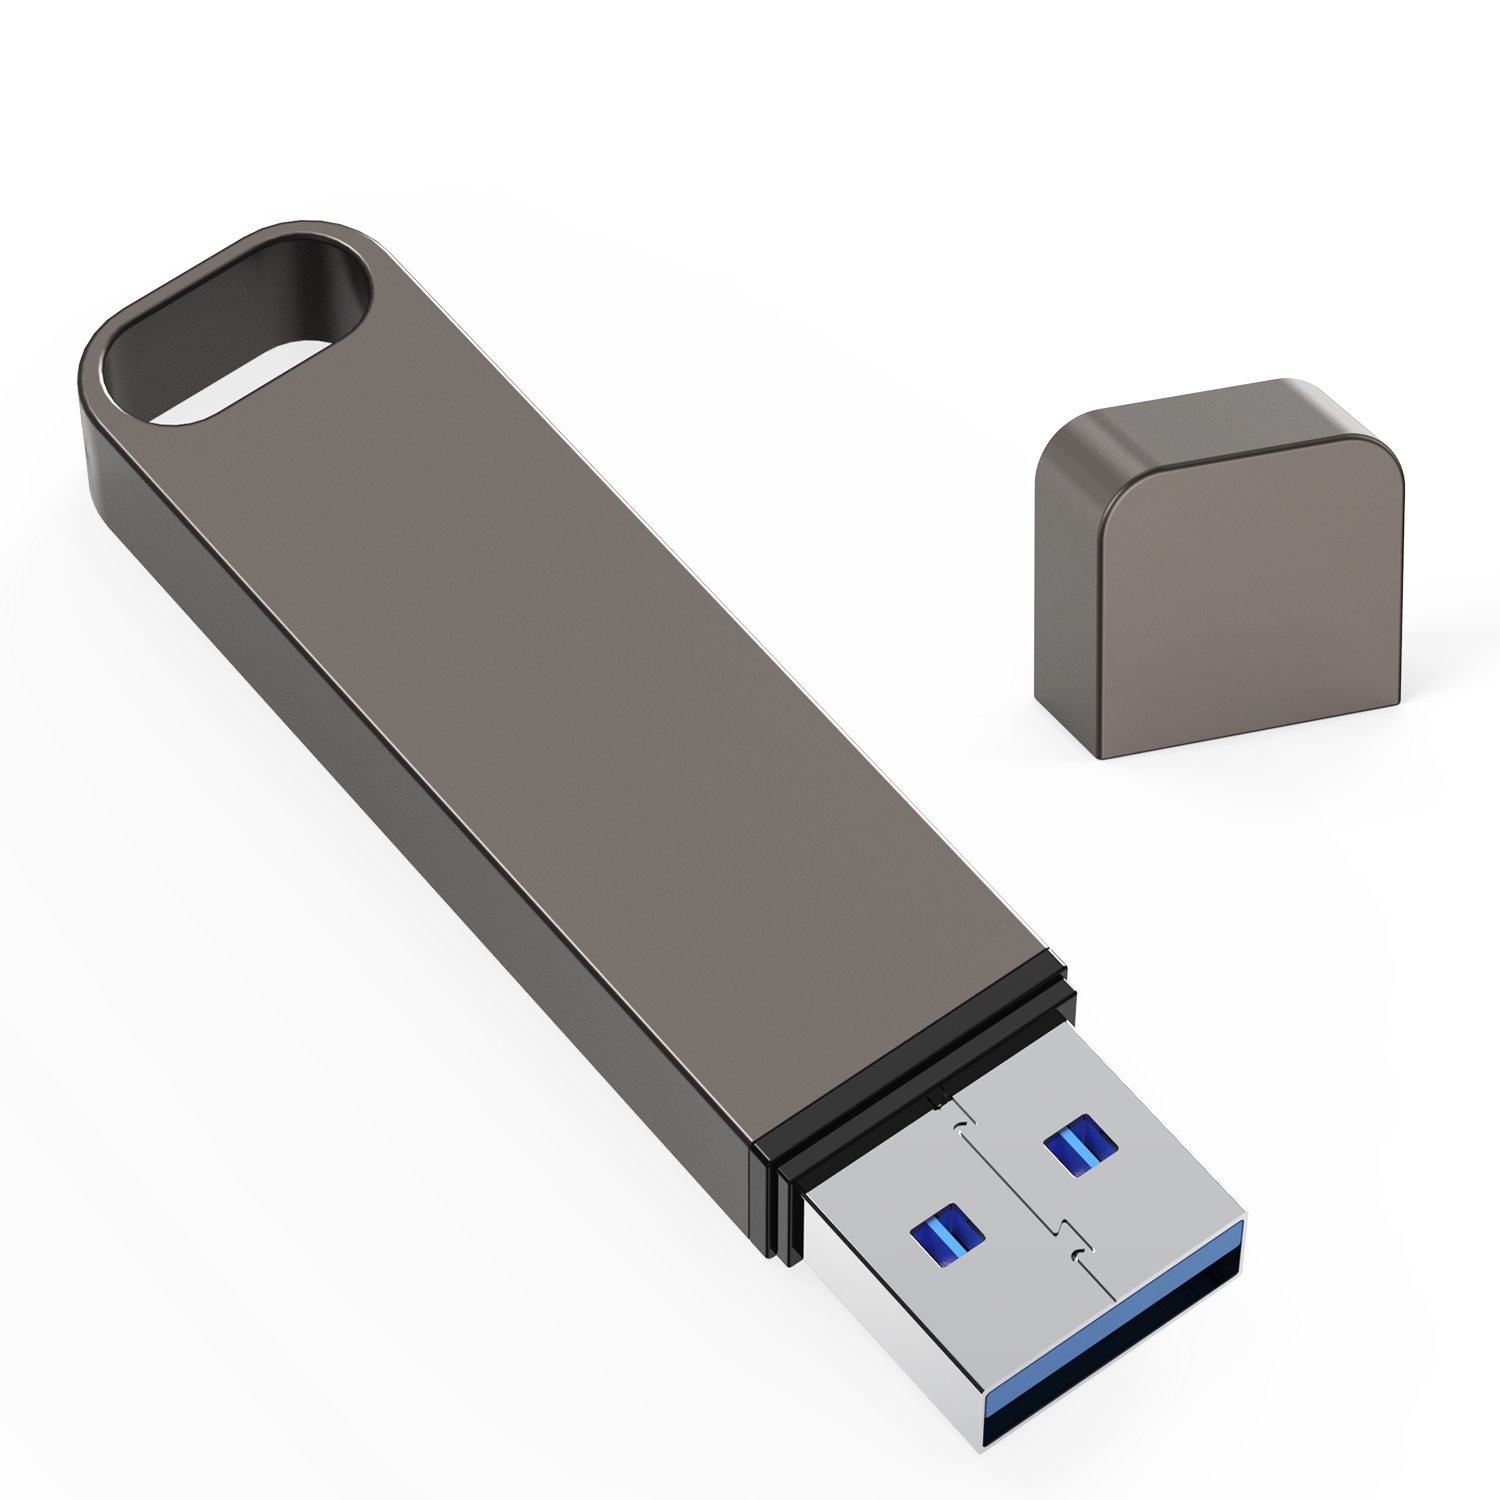 Kissin արտաքին SSD USB 3.1 ինտերֆեյսի փոխանցման արագություն 400MS